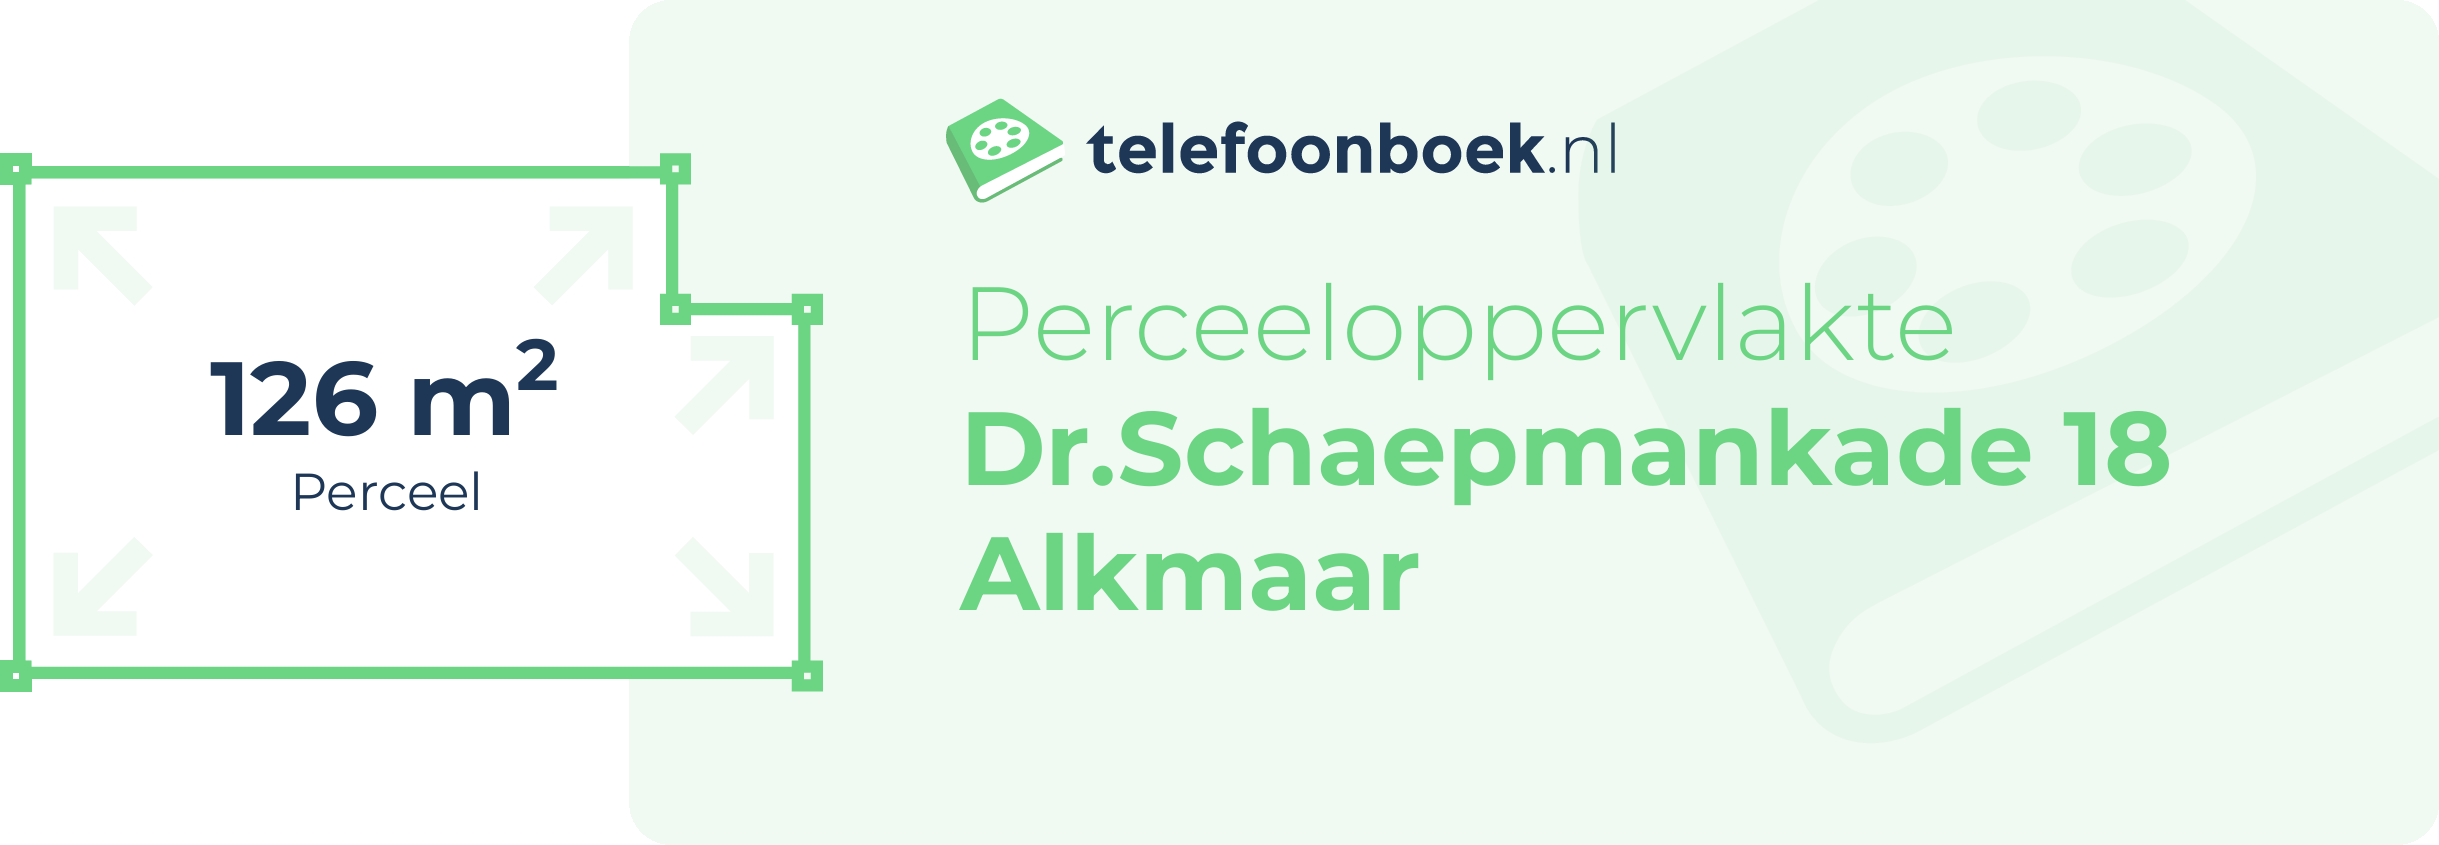 Perceeloppervlakte Dr.Schaepmankade 18 Alkmaar